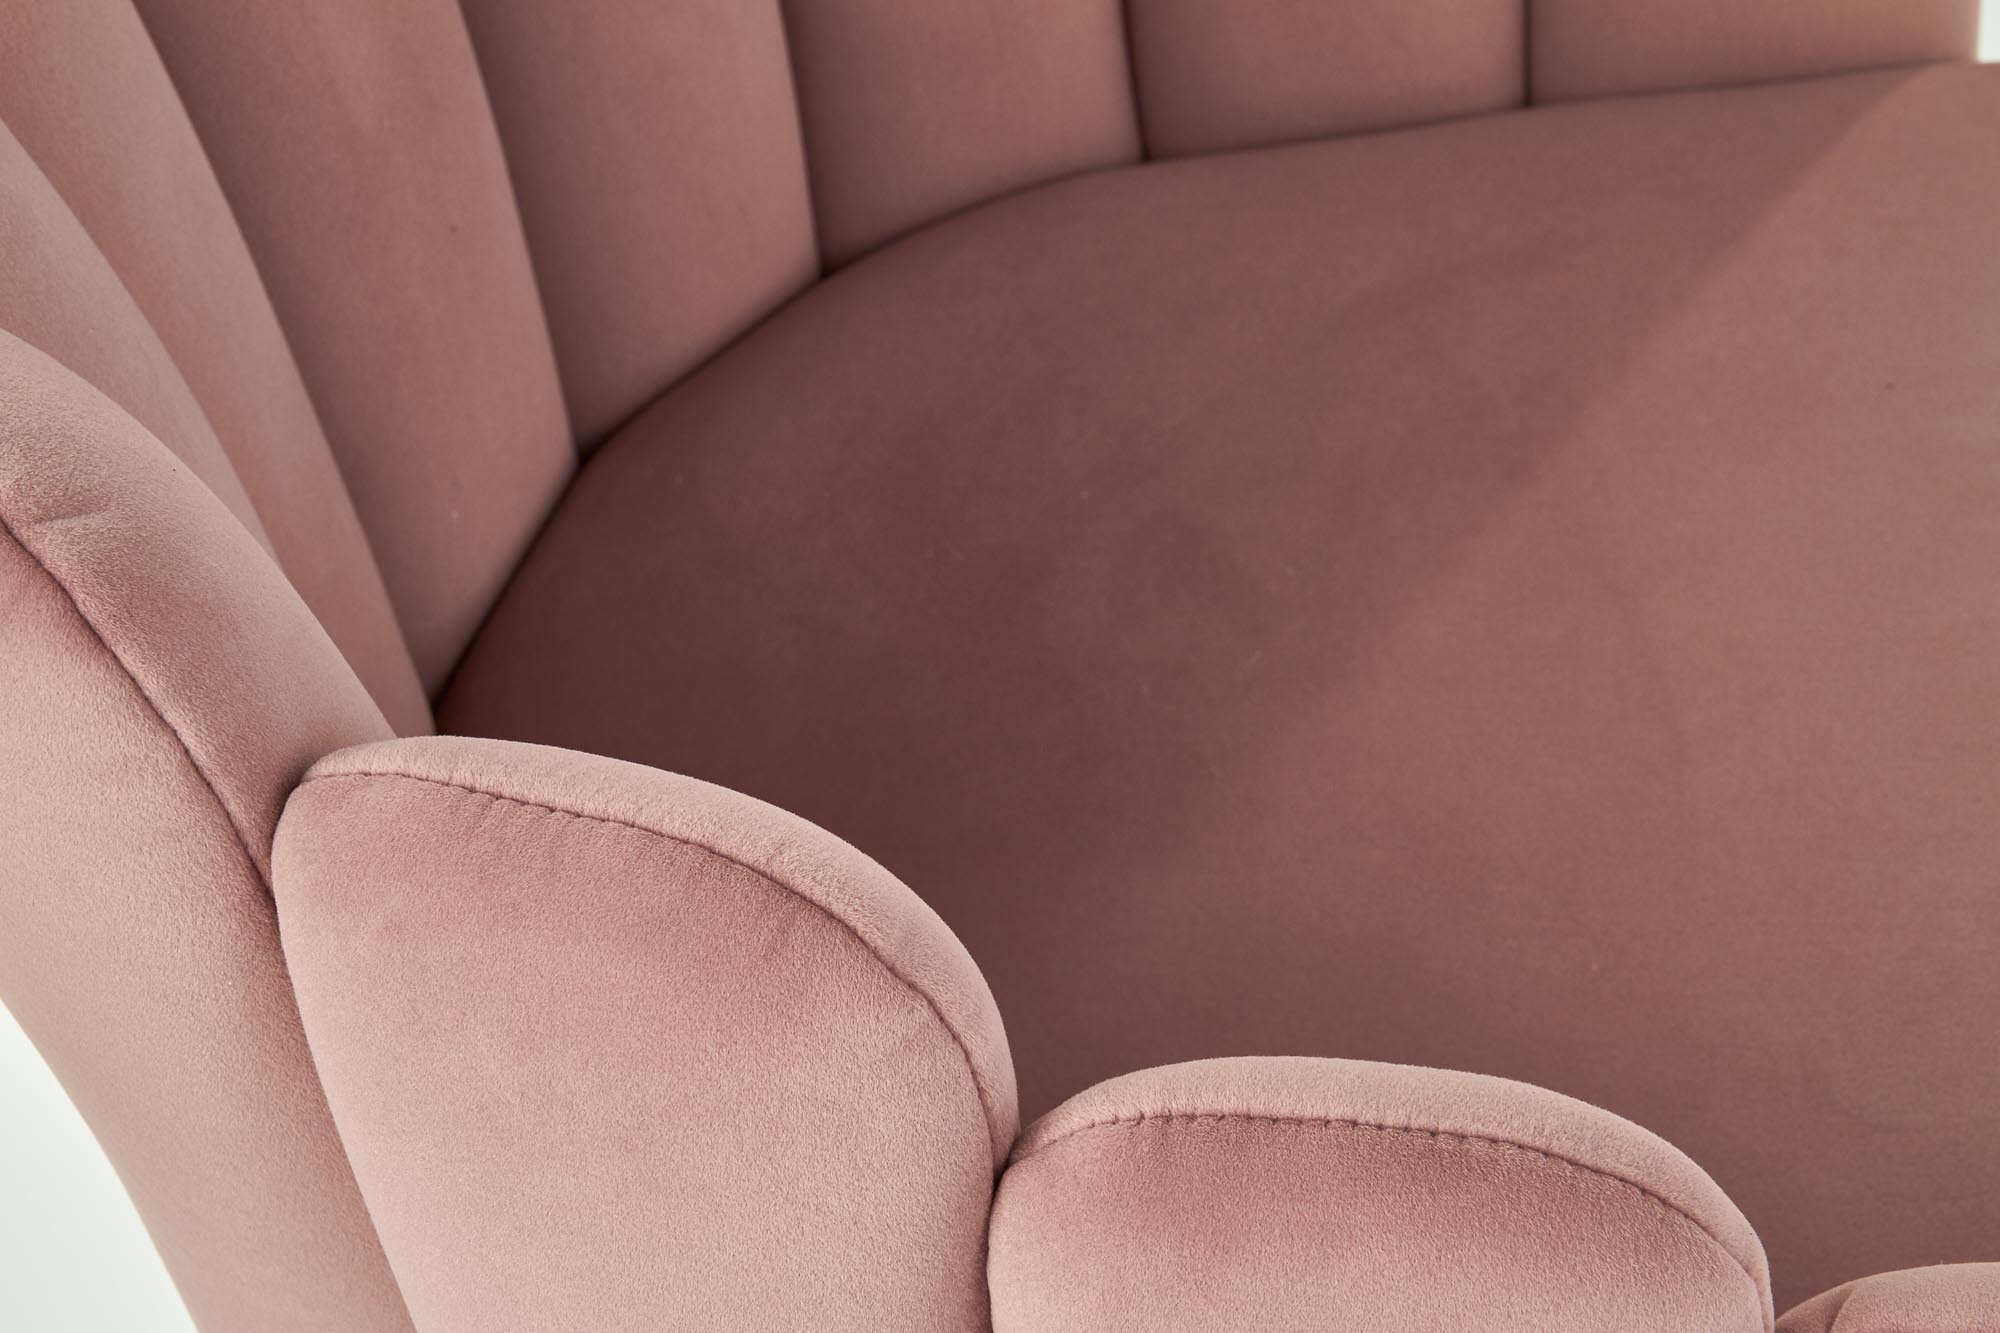 Scaun K410 - catifea roz Židle k410 - Růžová velvet